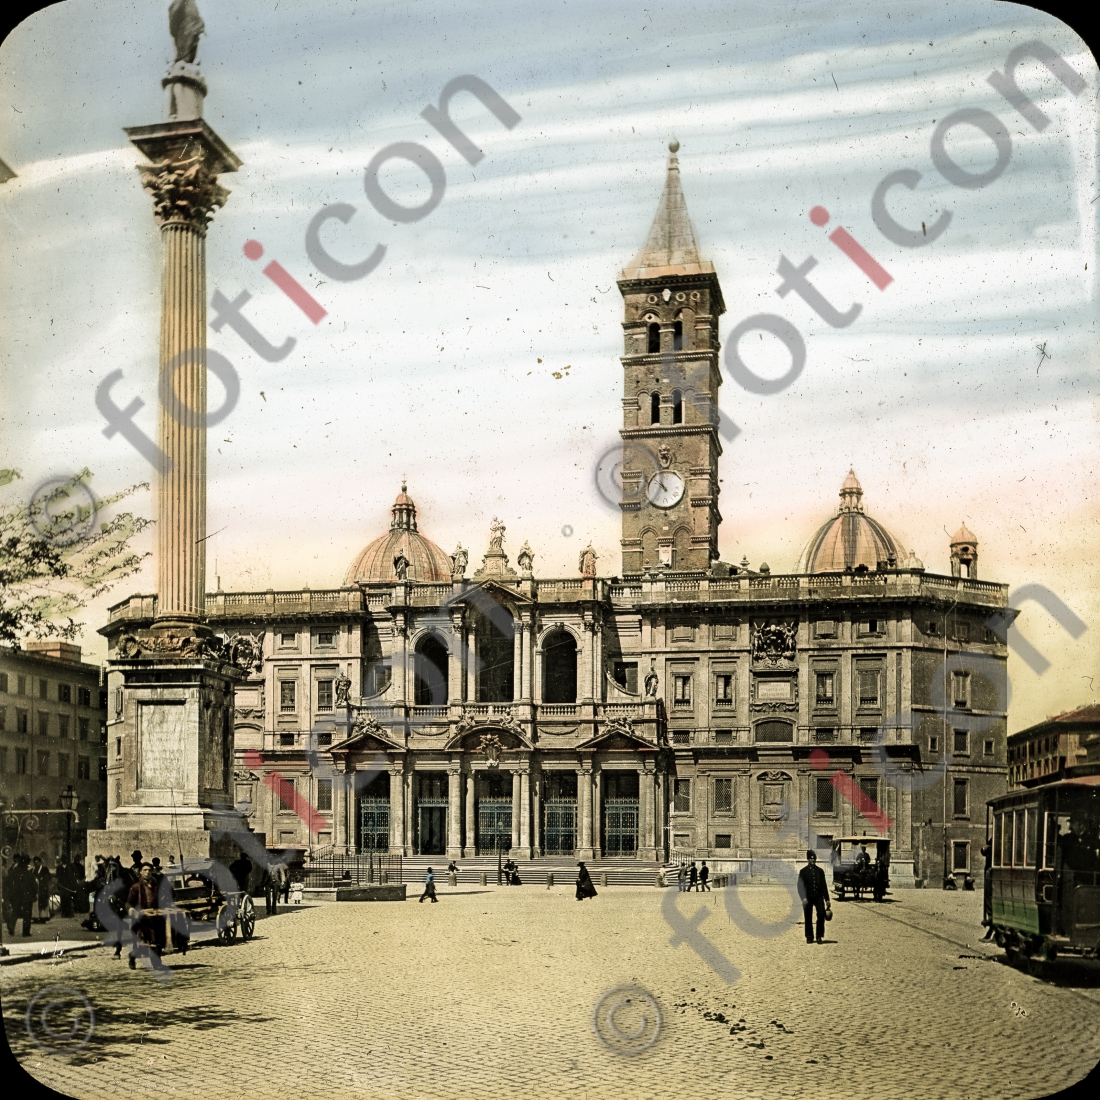 Santa Maria Maggiore | Santa Maria Maggiore - Foto foticon-simon-147-038.jpg | foticon.de - Bilddatenbank für Motive aus Geschichte und Kultur